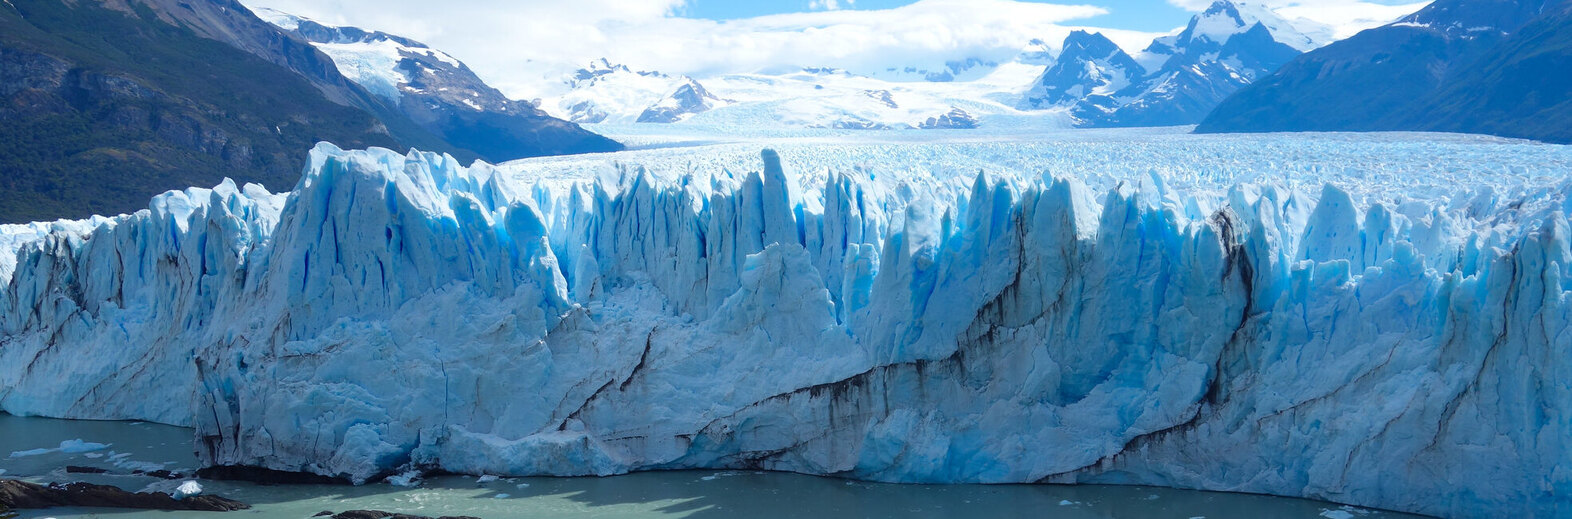 南美洲五國暨玻利維亞大鹽湖、百內、冰河、國家公園28日遊

